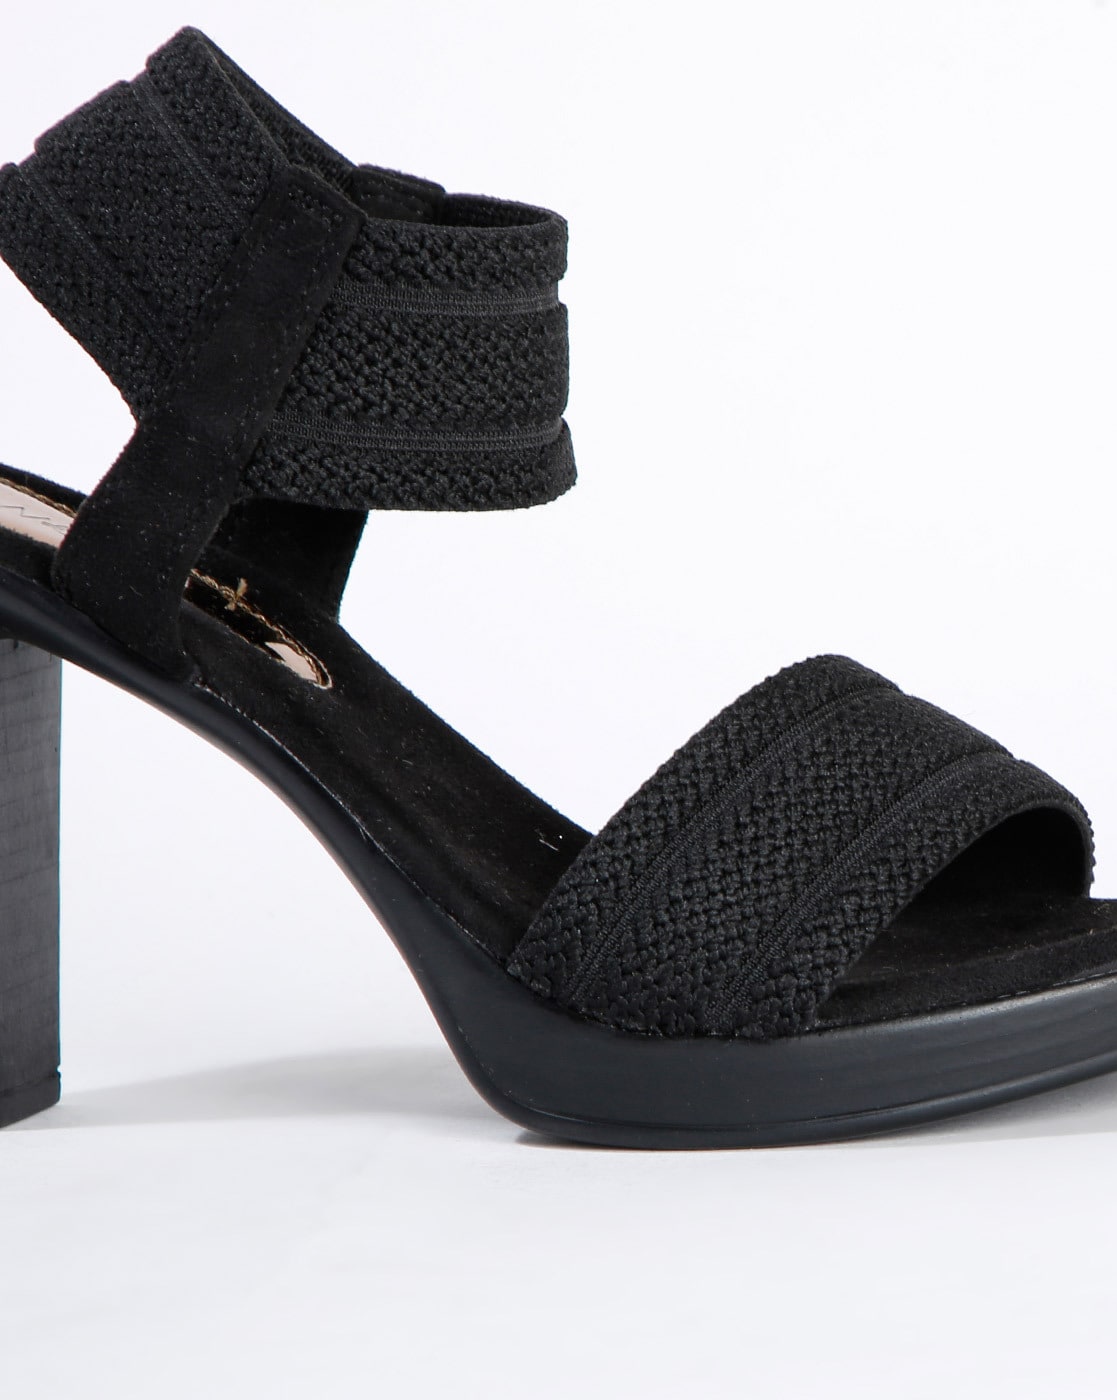 Heels & Wedges | Catwalk Black Block Heels | Freeup-omiya.com.vn